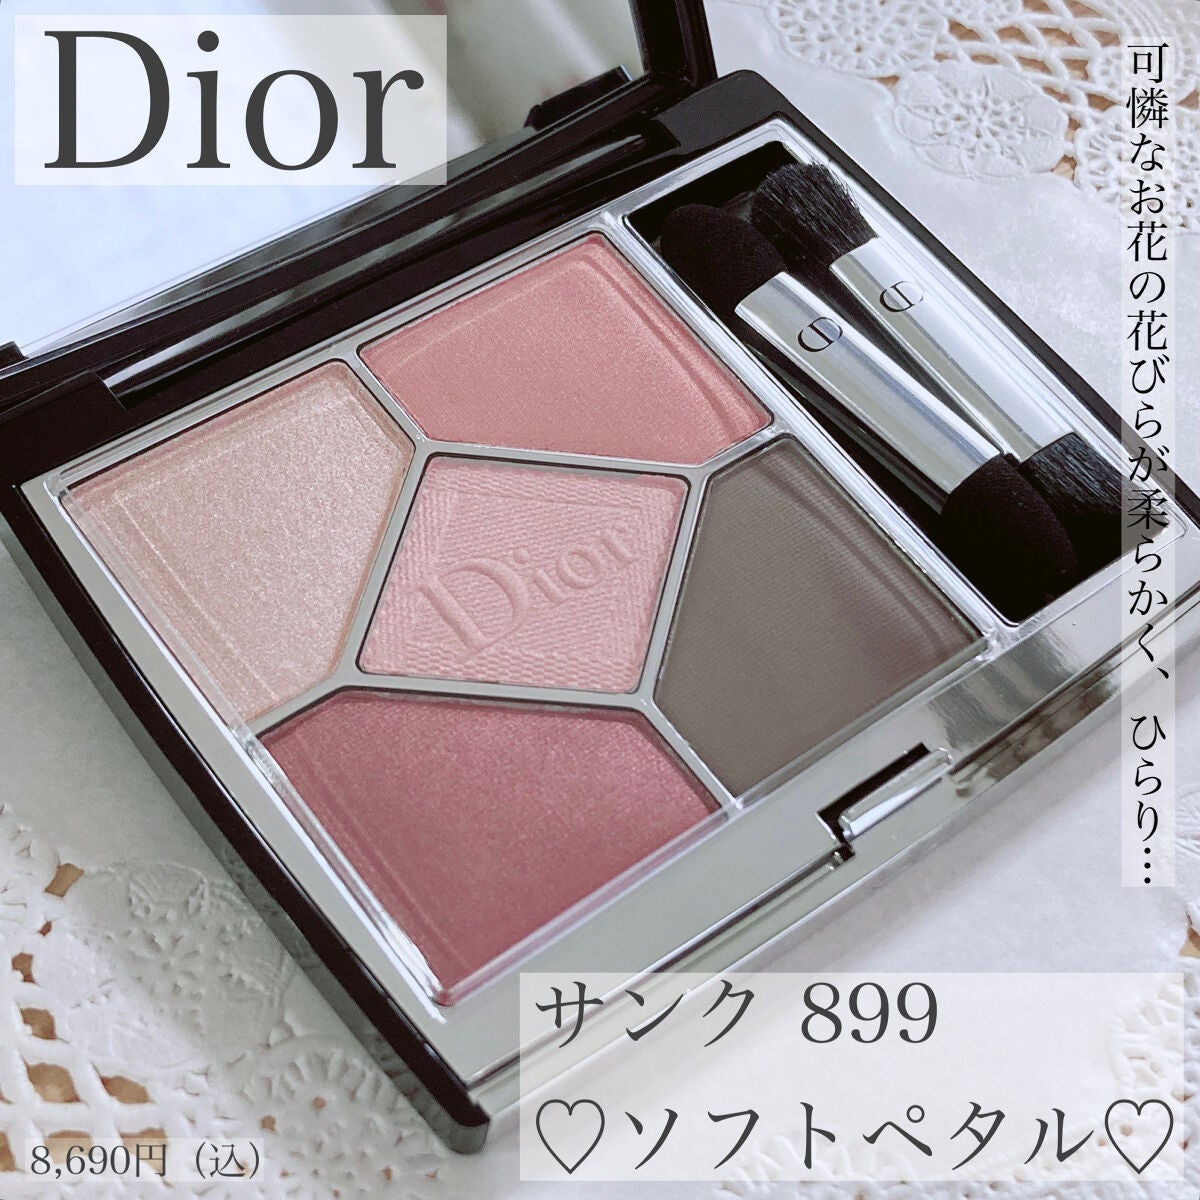 Dior サンククルールクチュール 899ソフトペタル